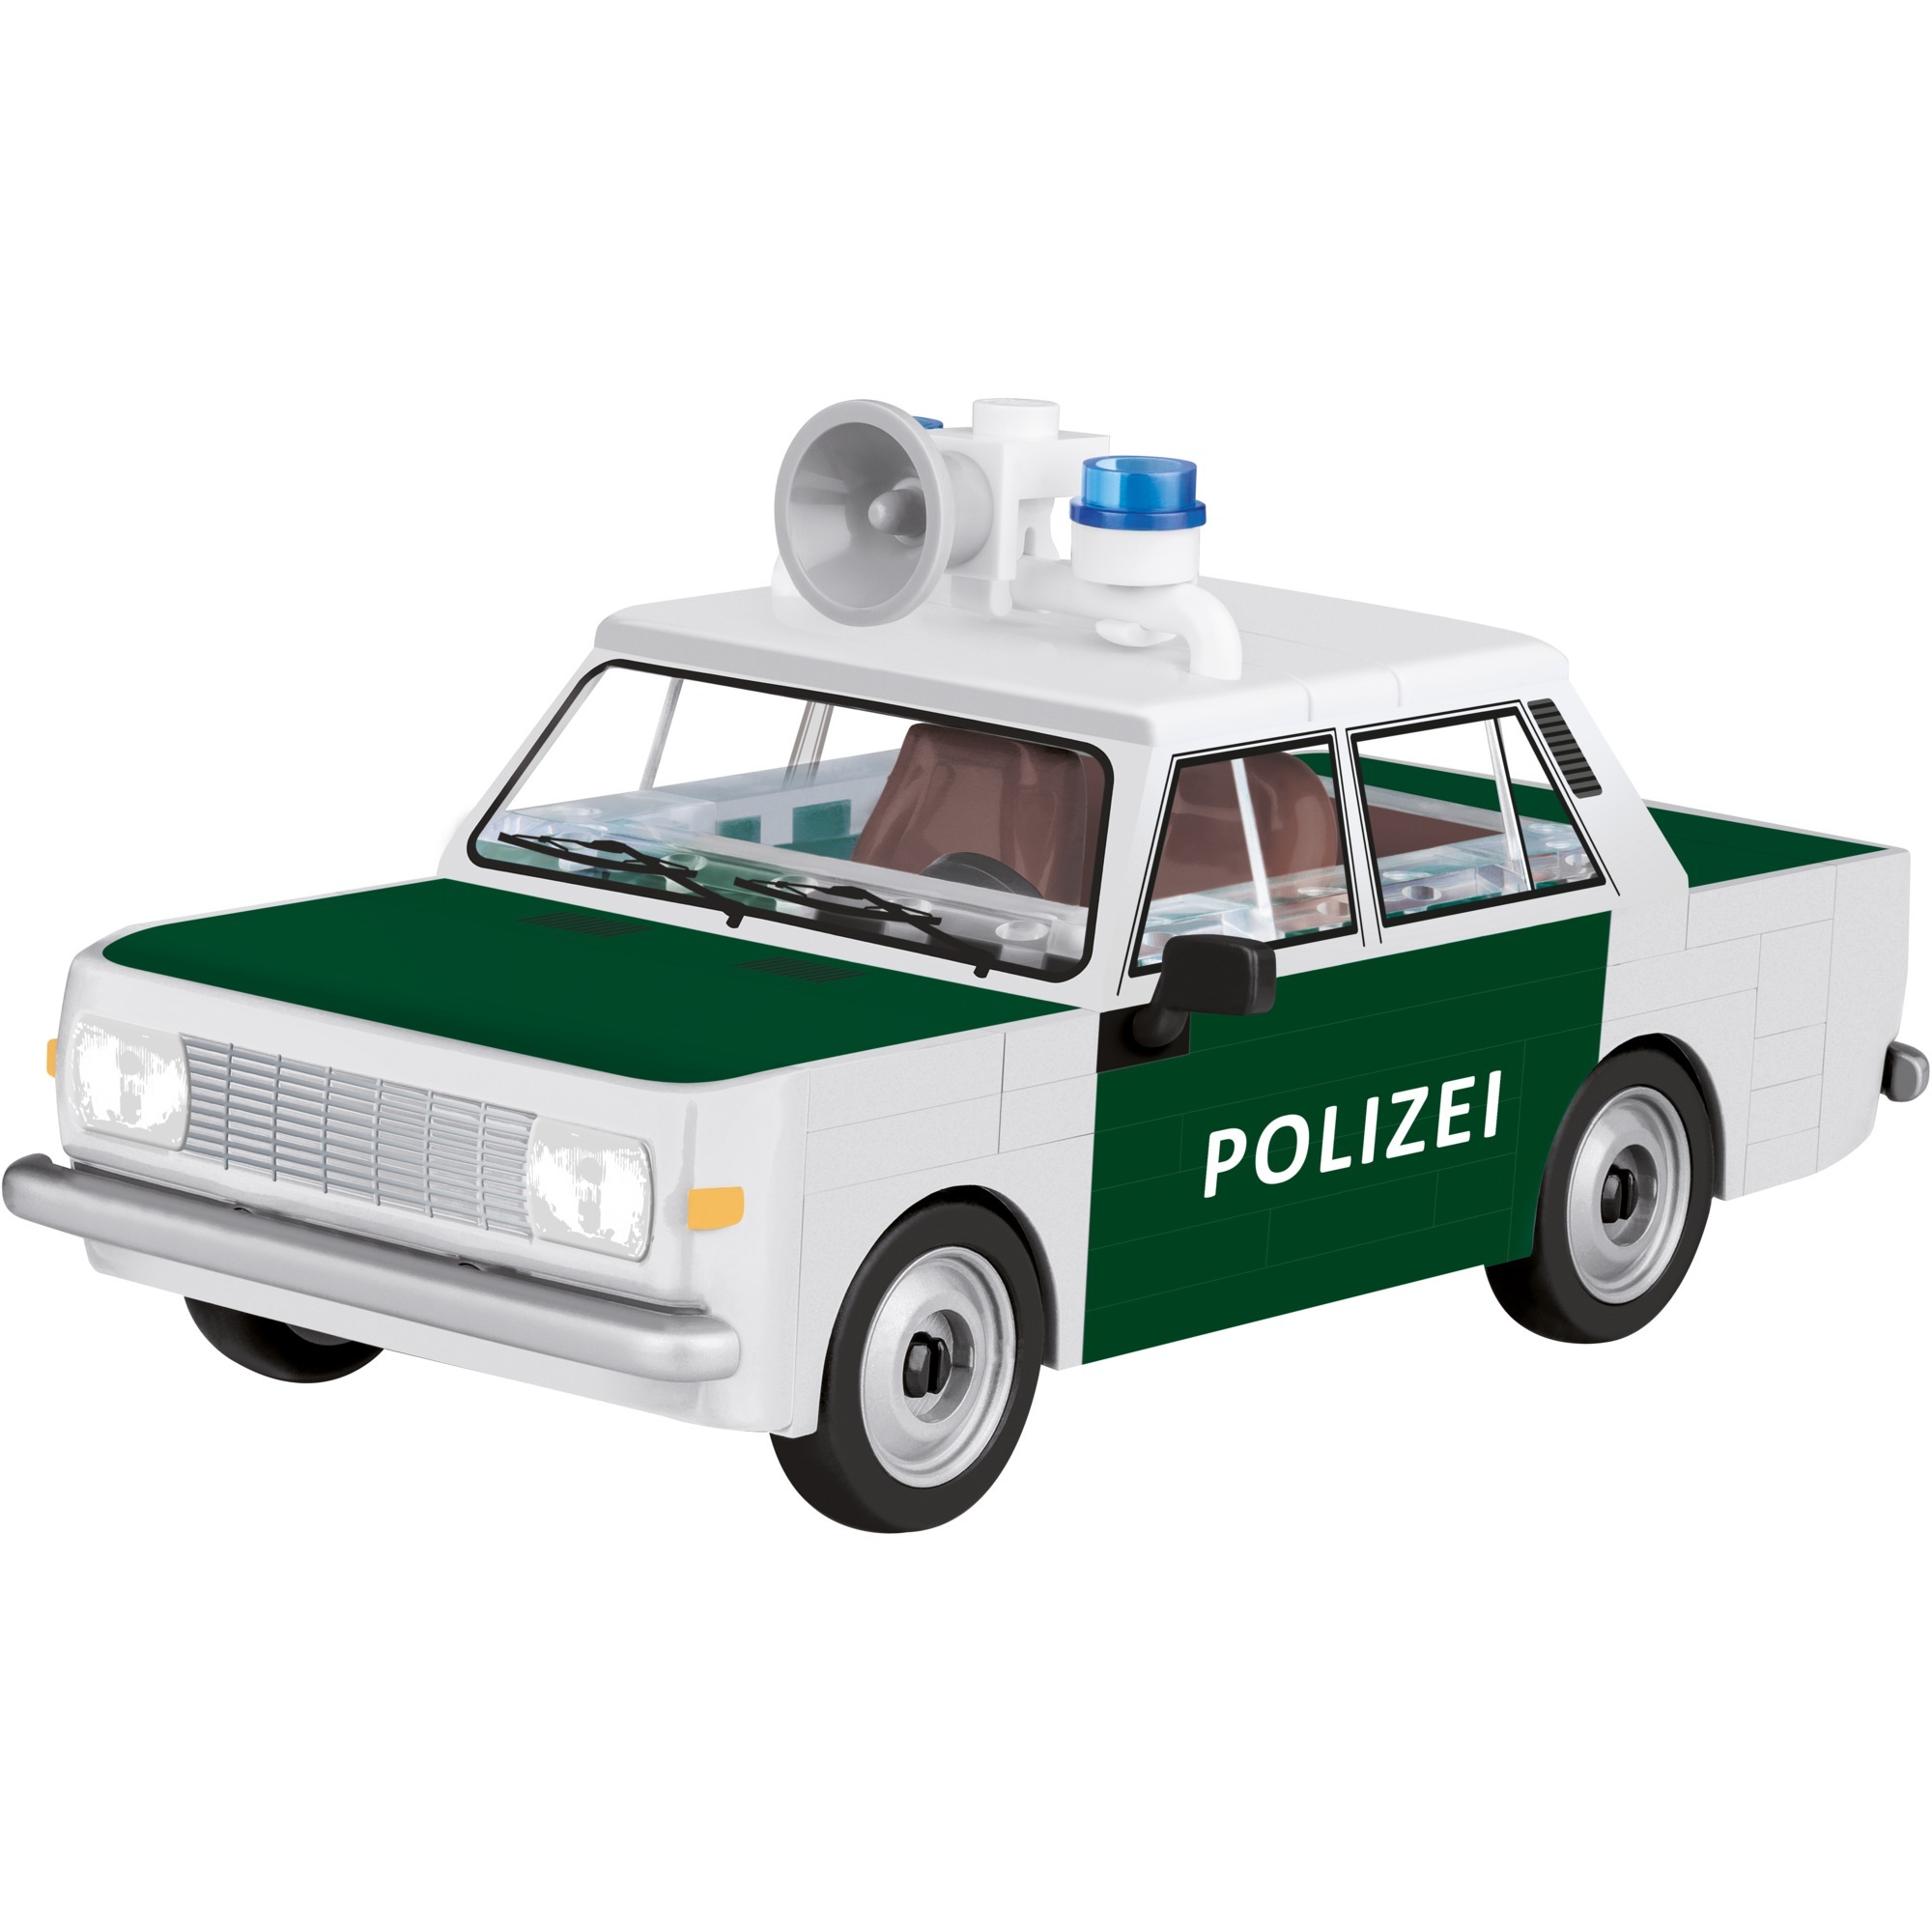 Image of Alternate - Youngtimer Wartburg 353 Polizei, Konstruktionsspielzeug online einkaufen bei Alternate